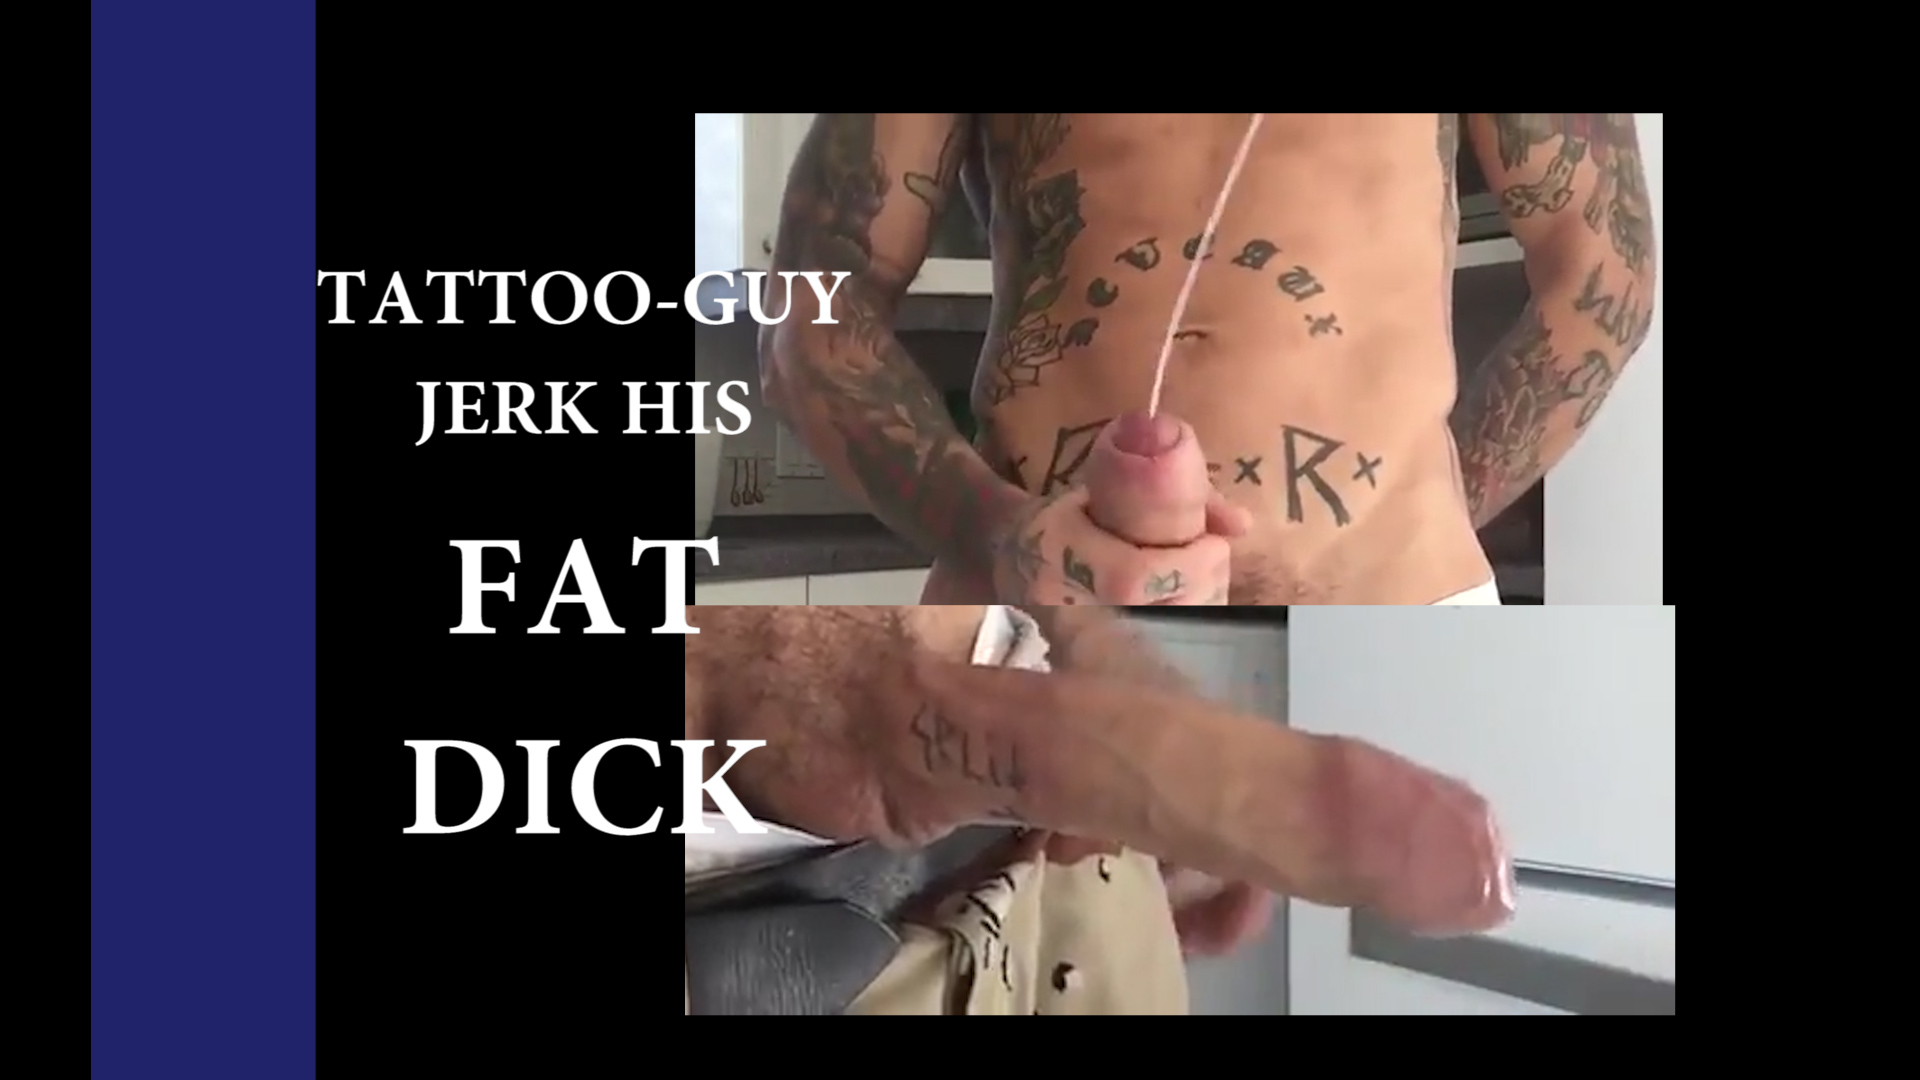 Fat dick jerk his dick